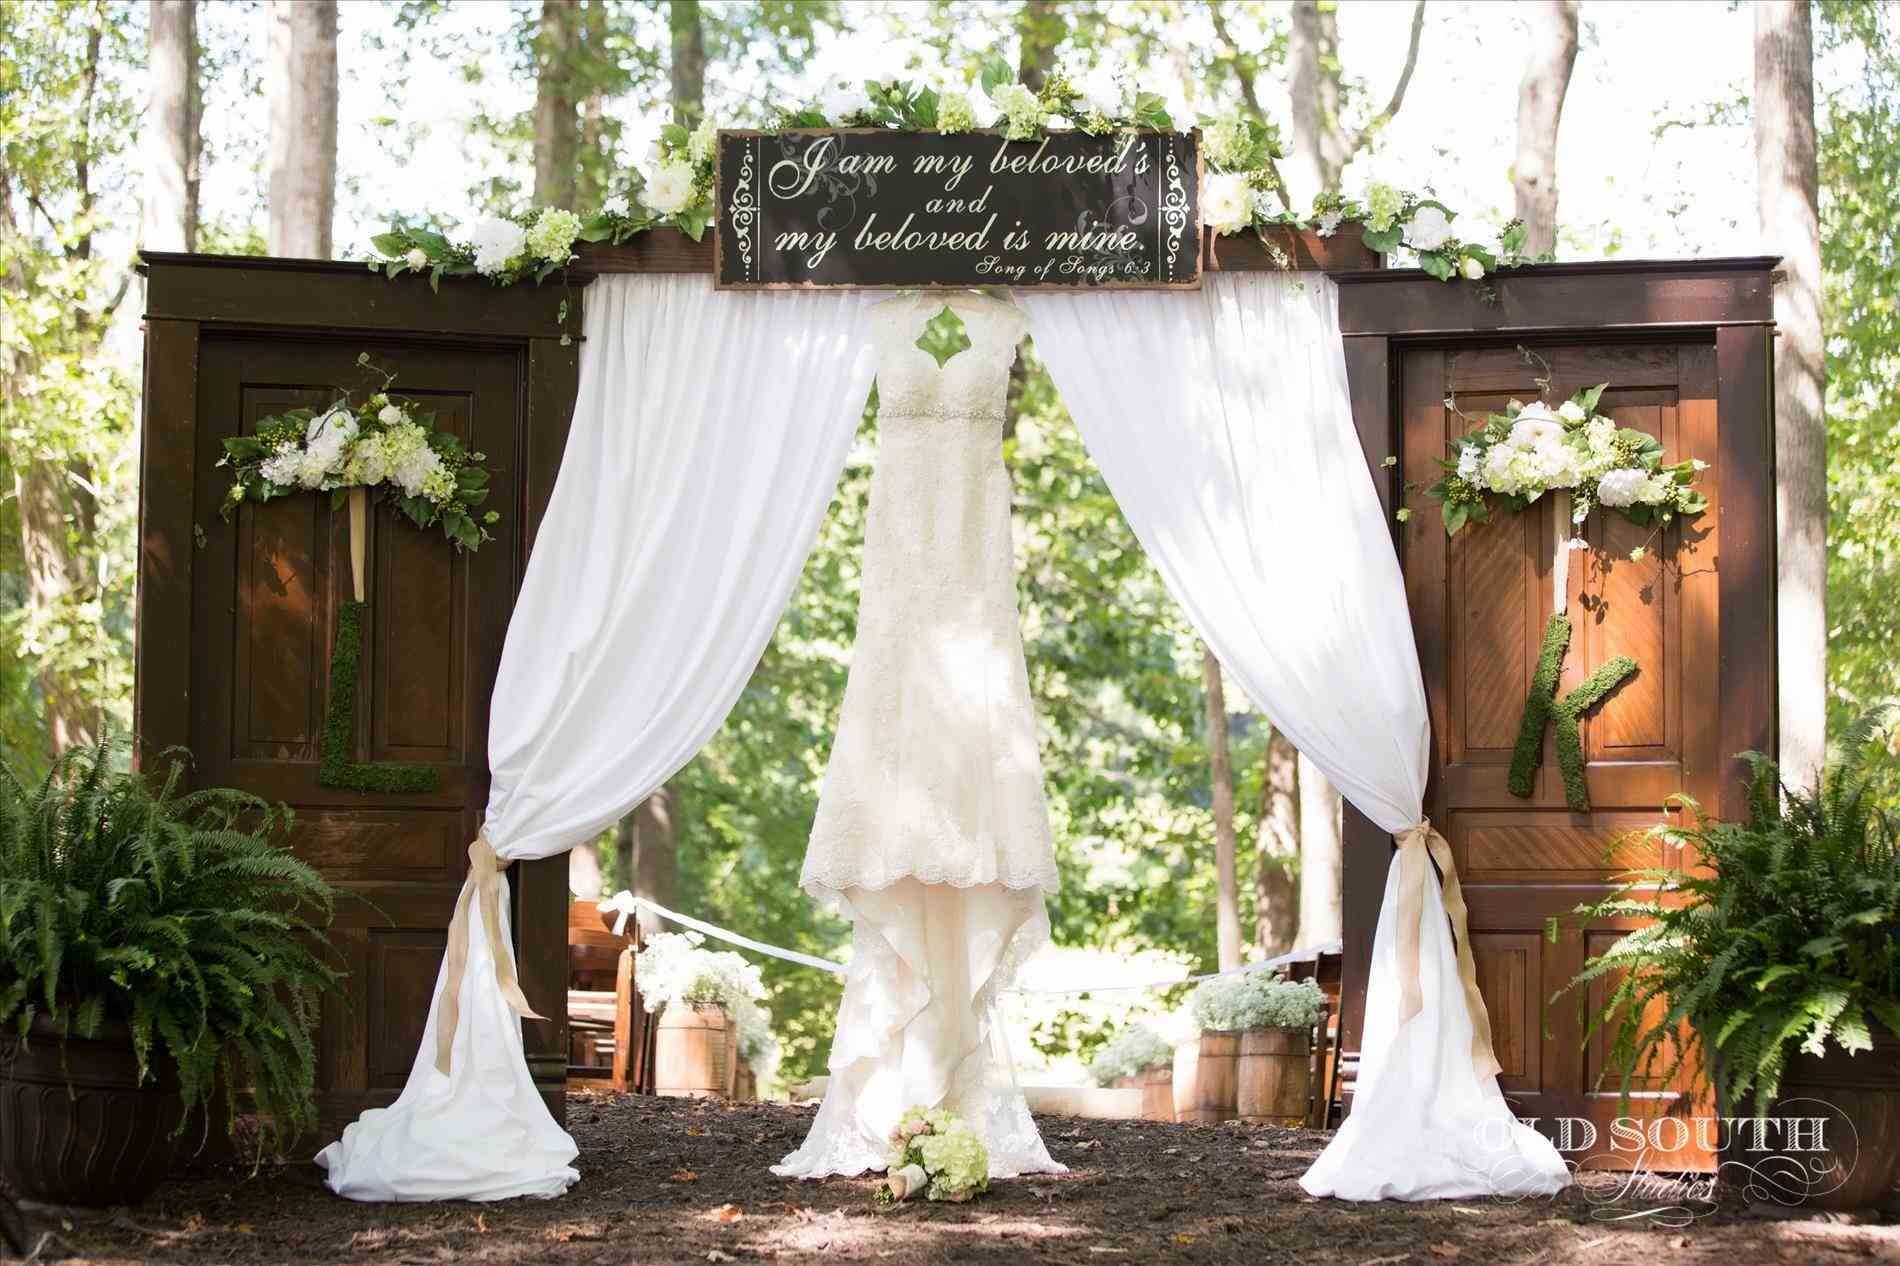 Wedding gate